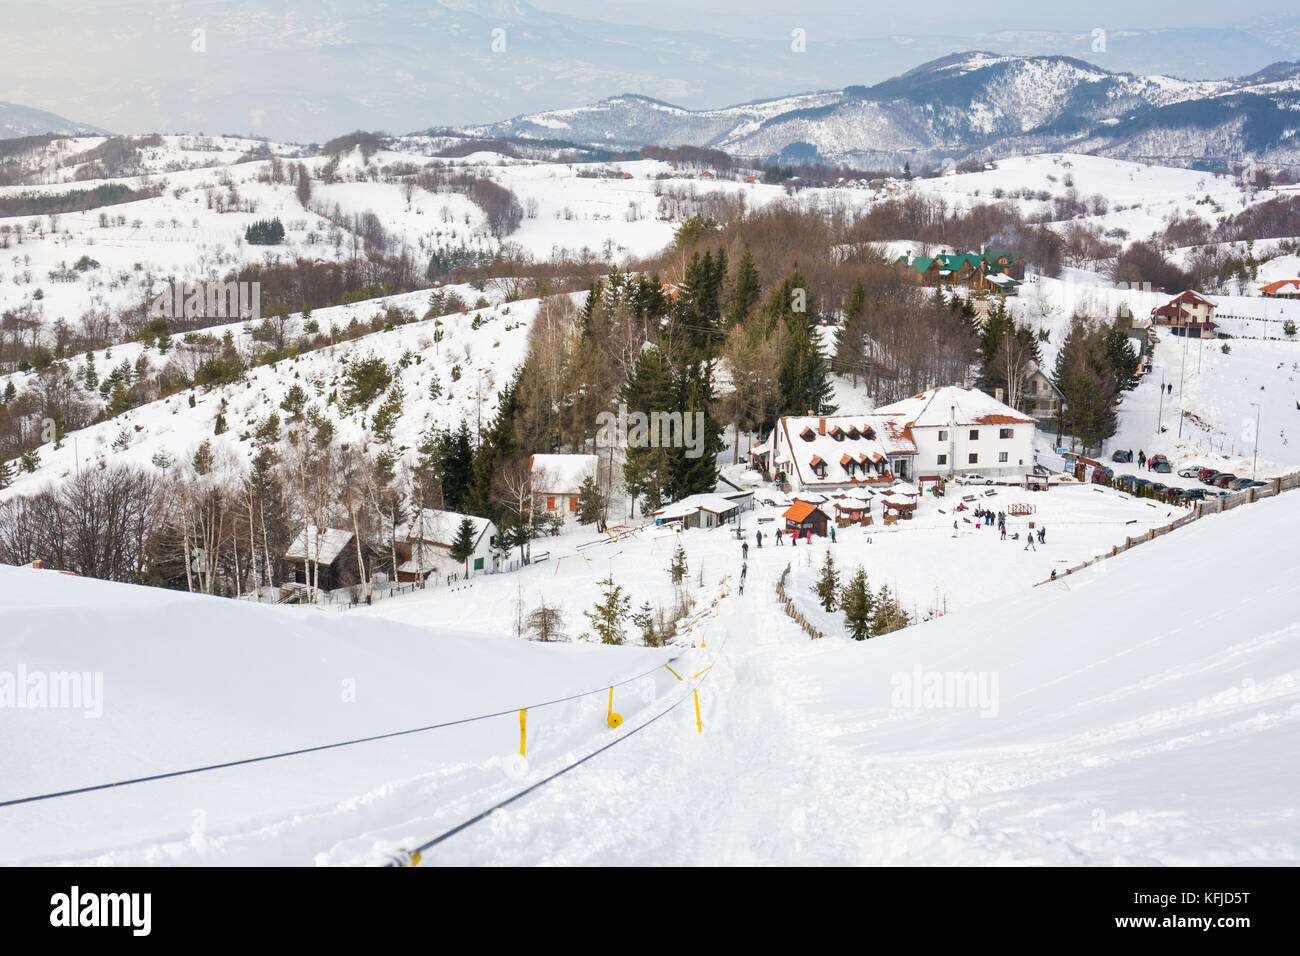 Vintage ski lift on snow covered mountain Stock Photo